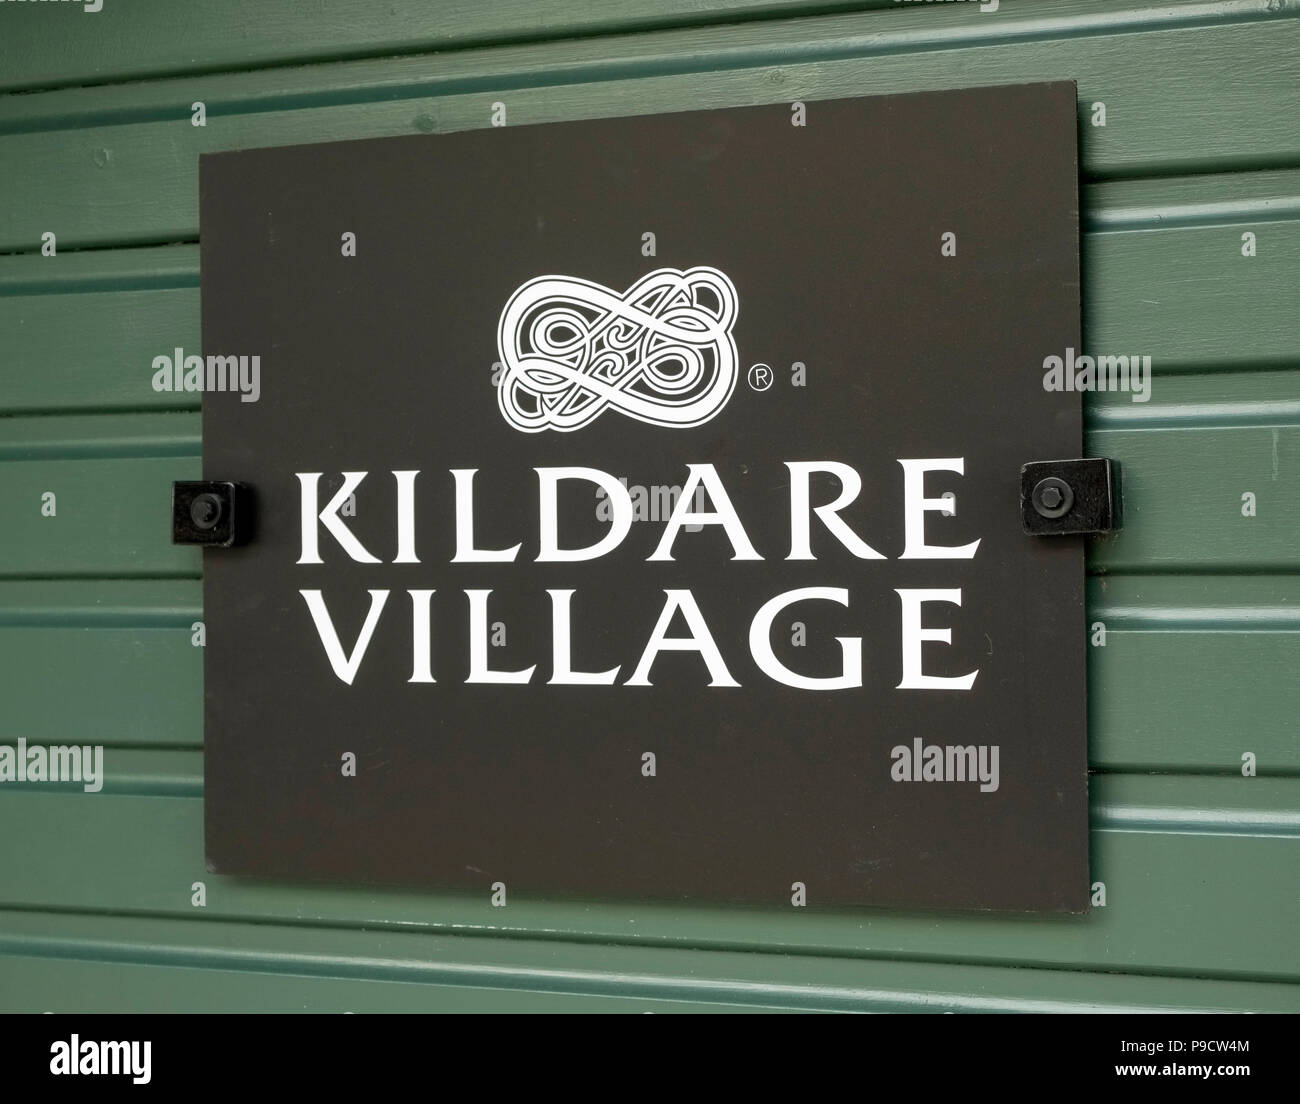 Kildare Village outlet shopping logo, Irlande, Europe Banque D'Images